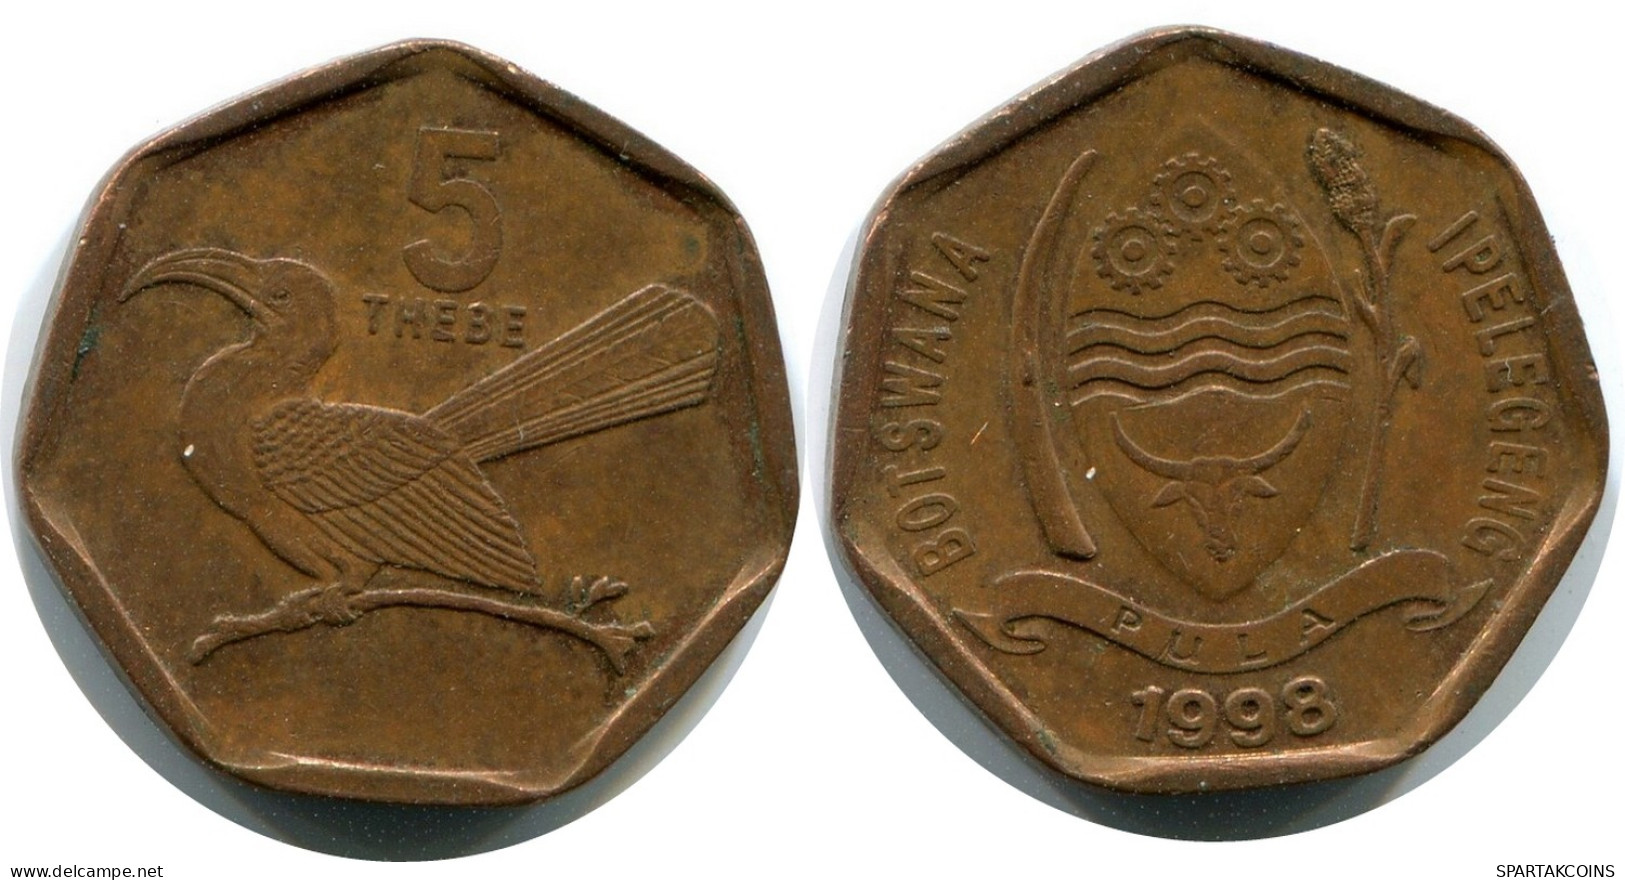 5 THEBE 1998 BOTSWANA Coin #AX377.U - Botswana